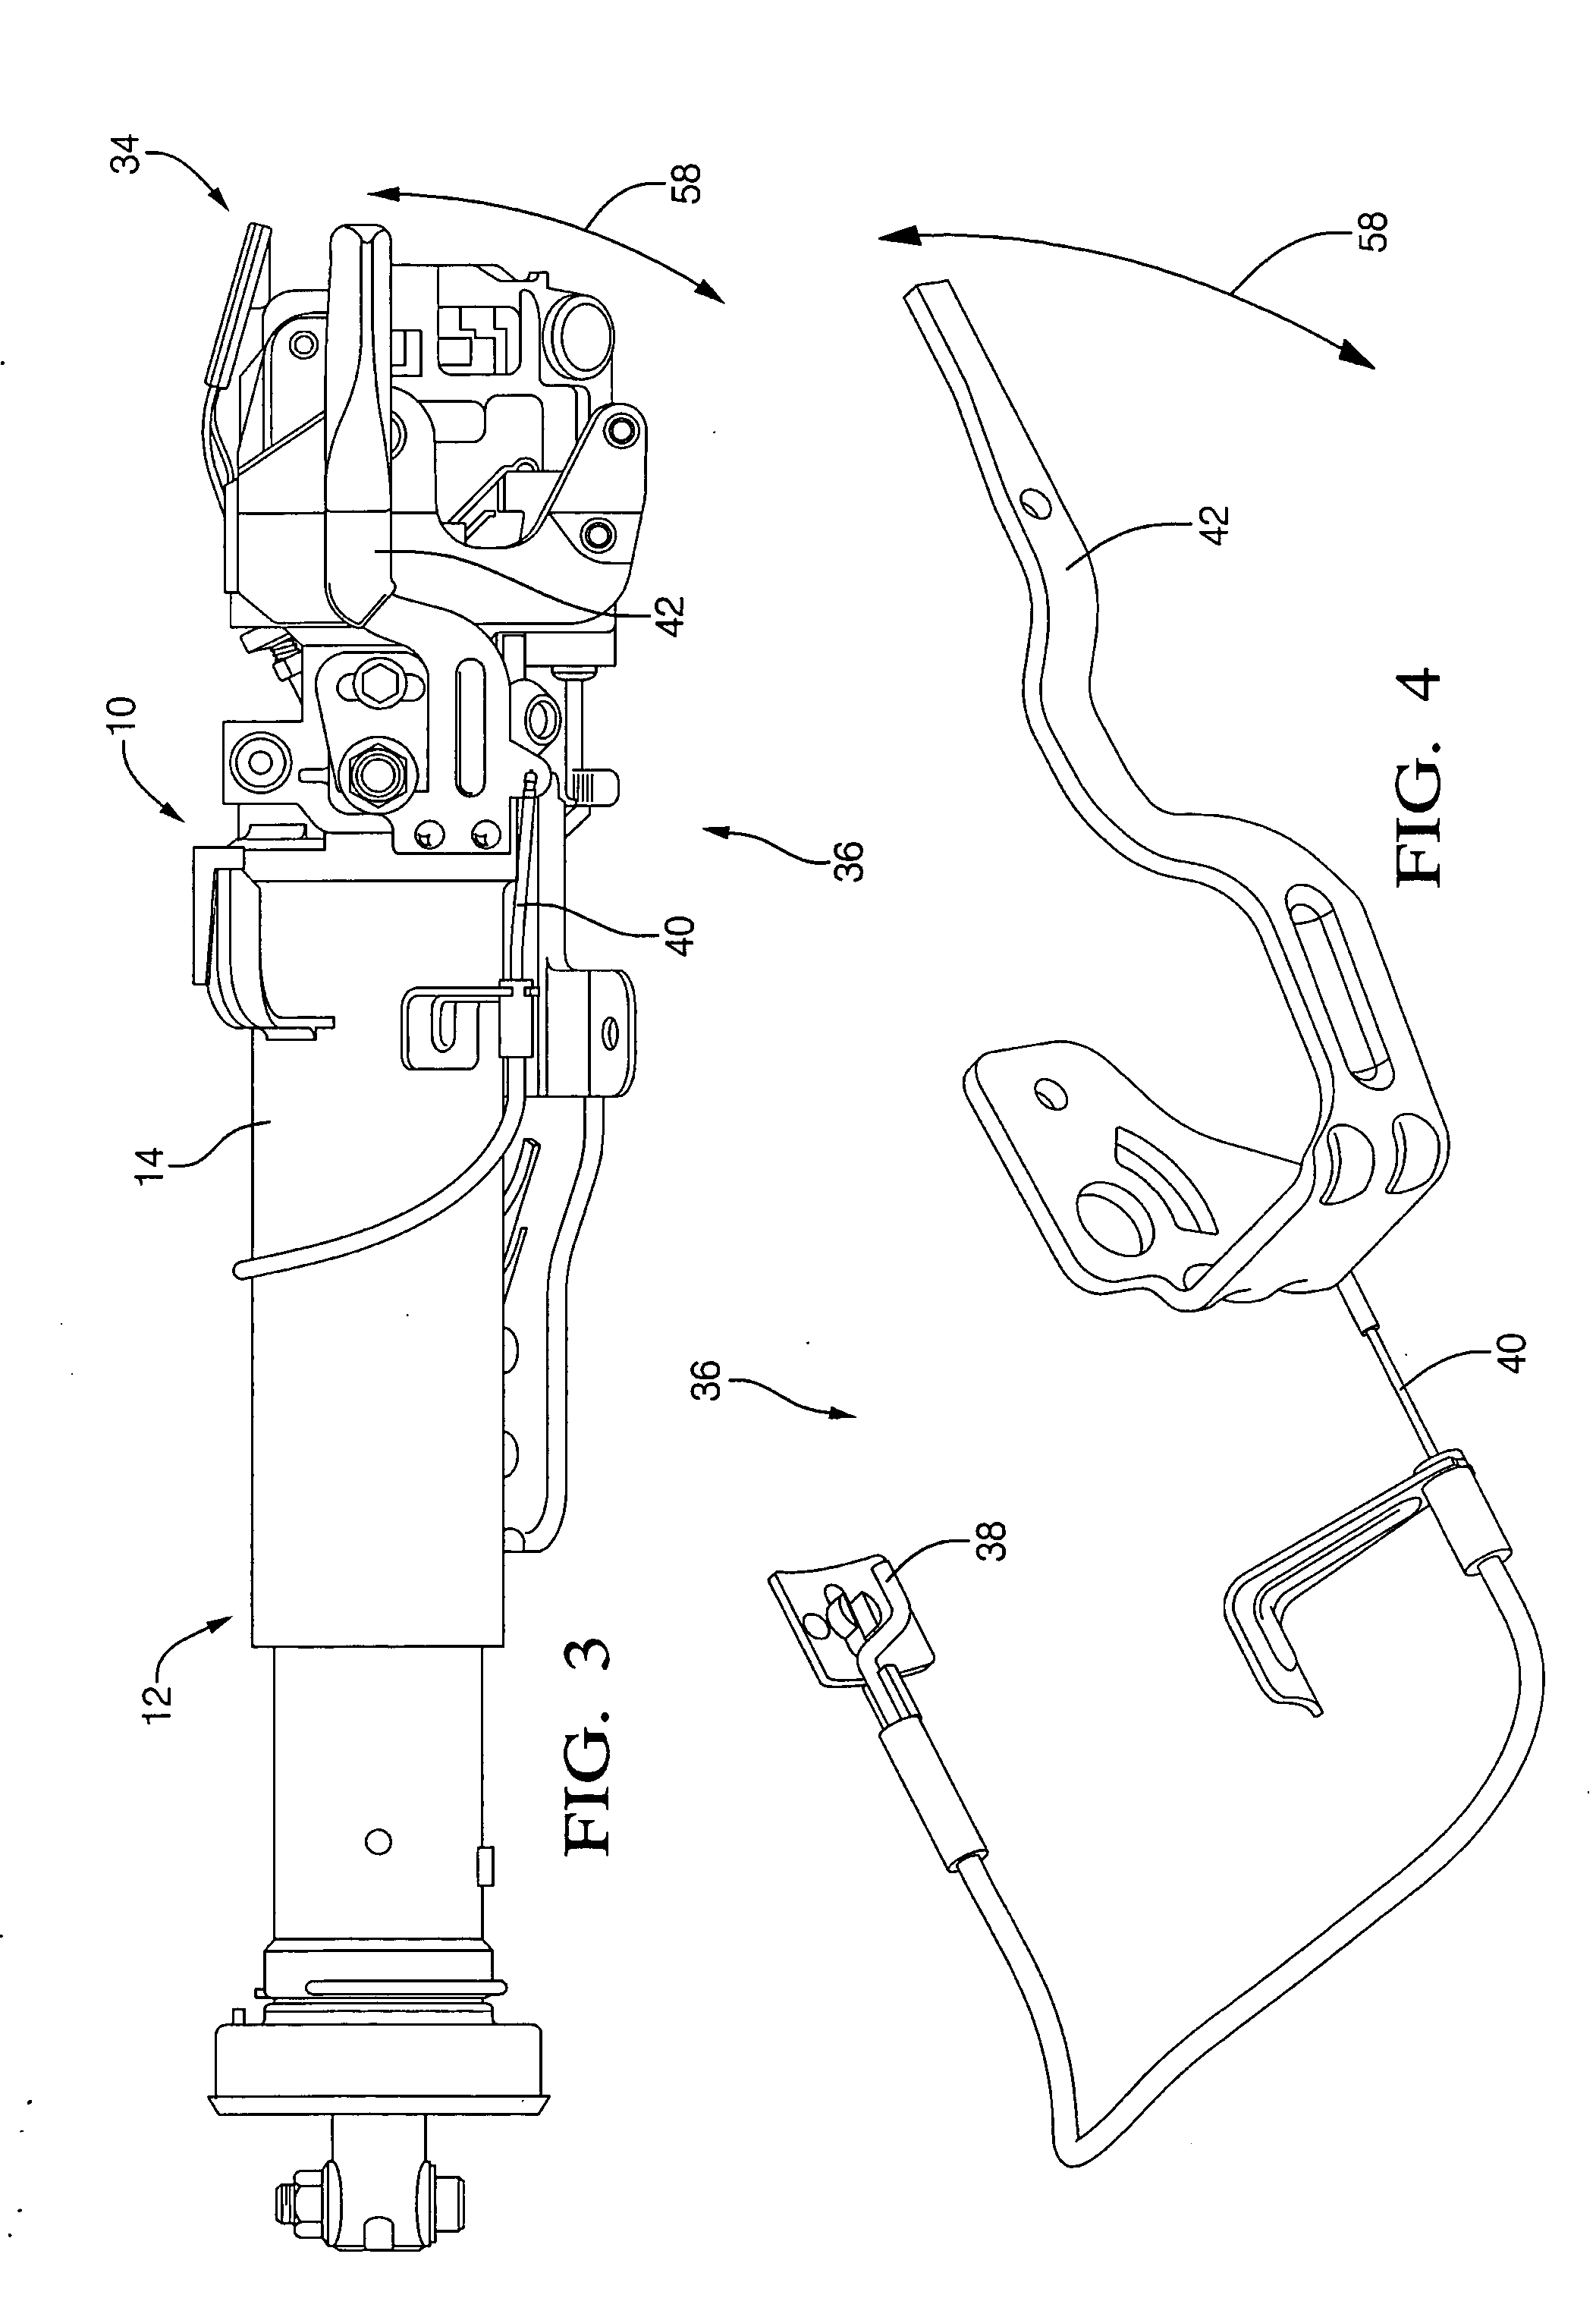 Telescope wedge locking mechanism